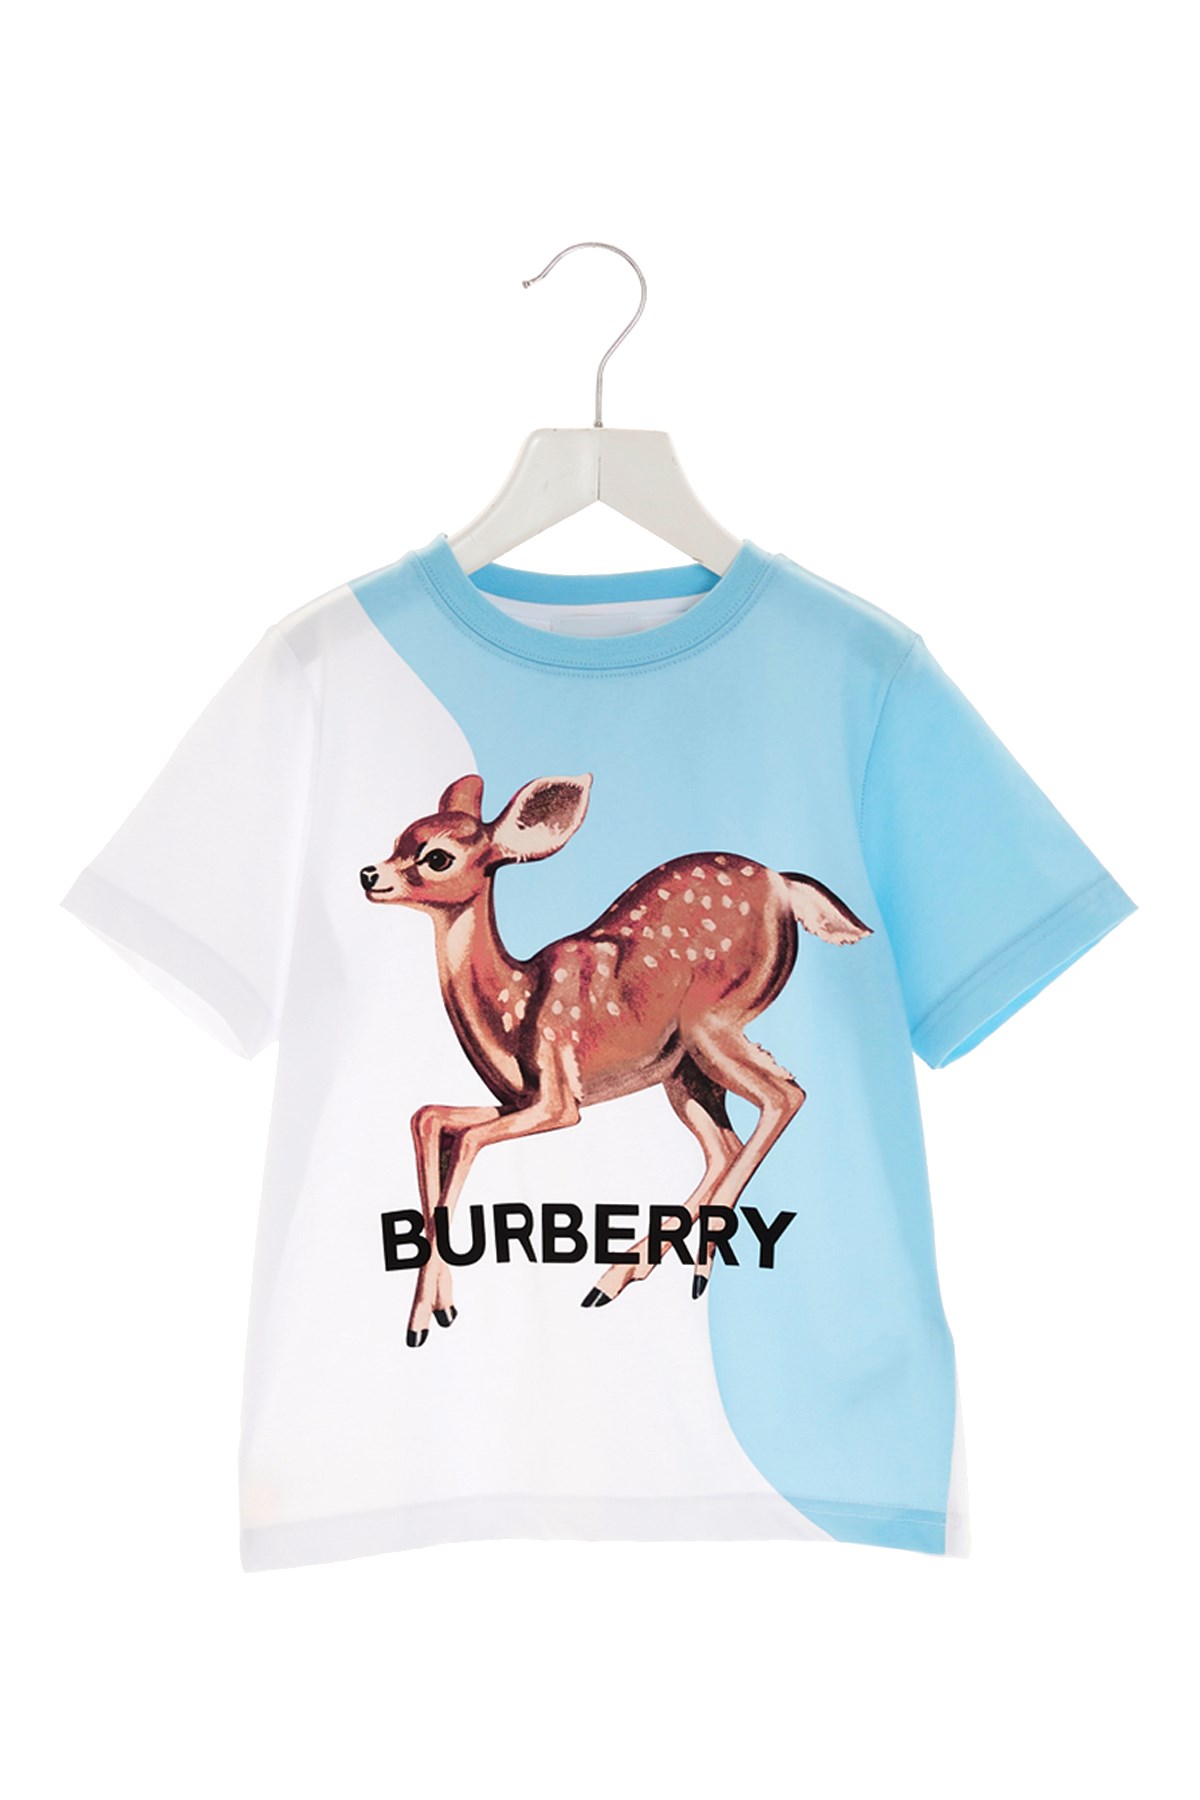 BURBERRY T-Shirt 'Deer'